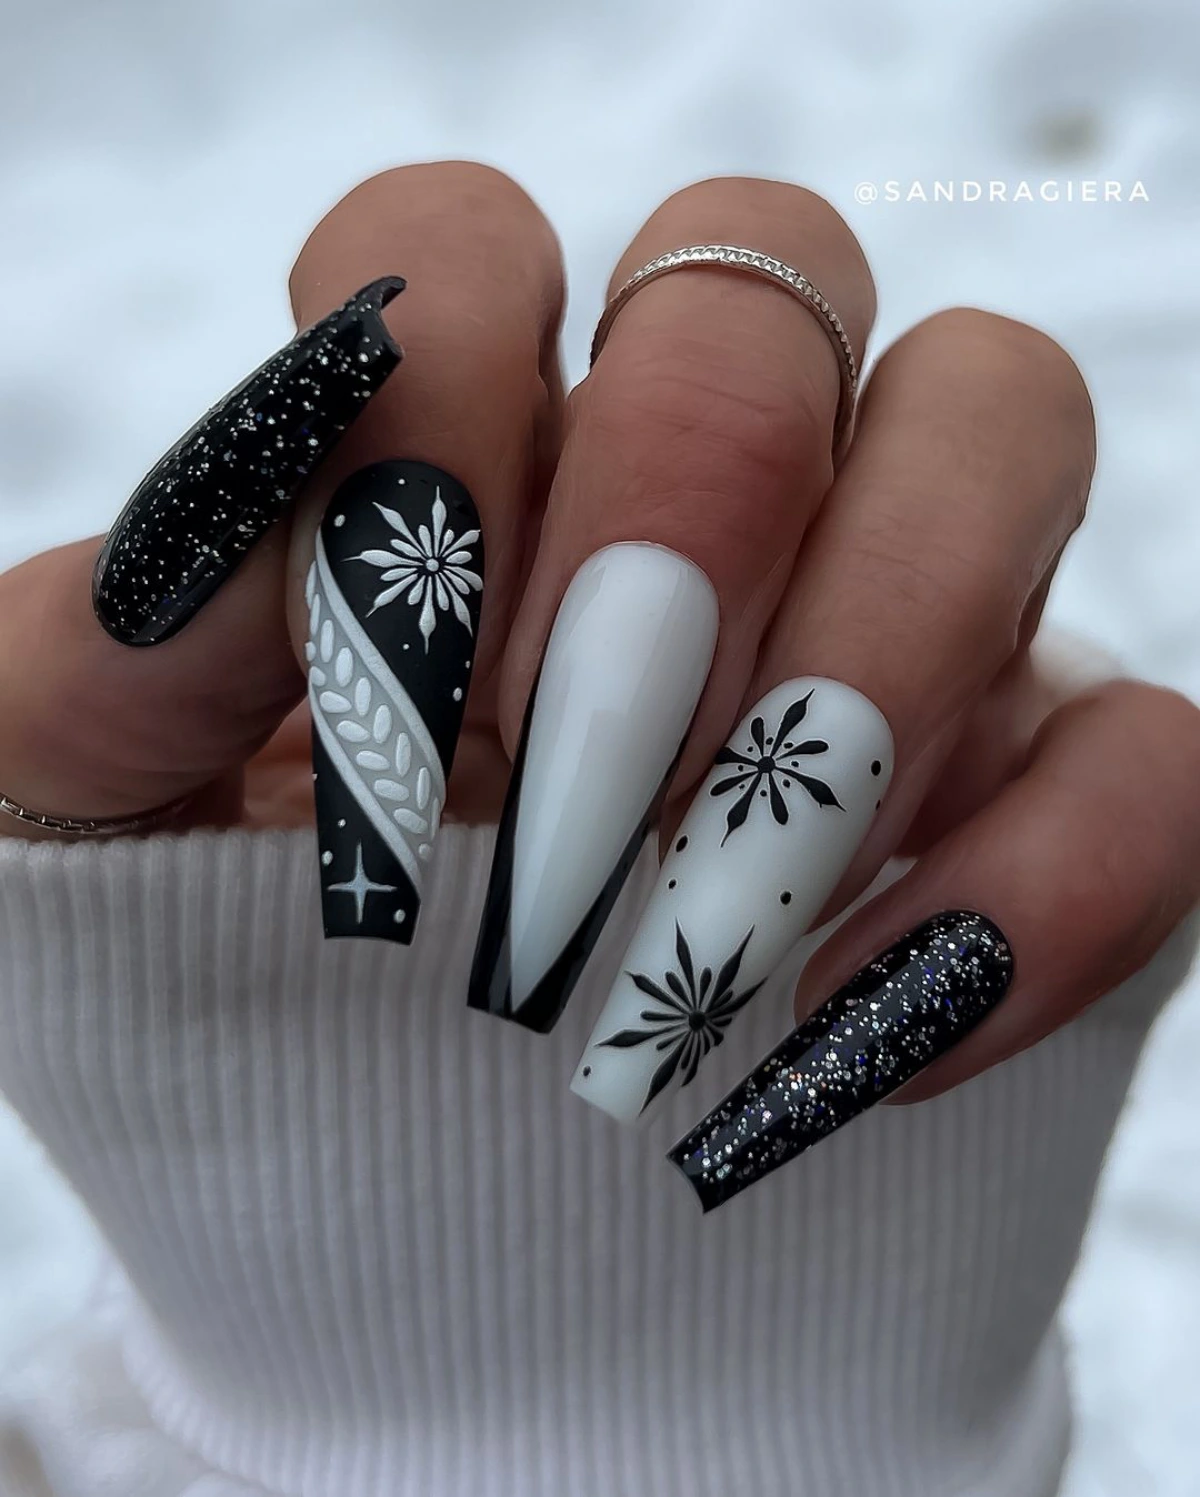 ongles en noir et blanc nail art hiver vernis noir top coat paillette